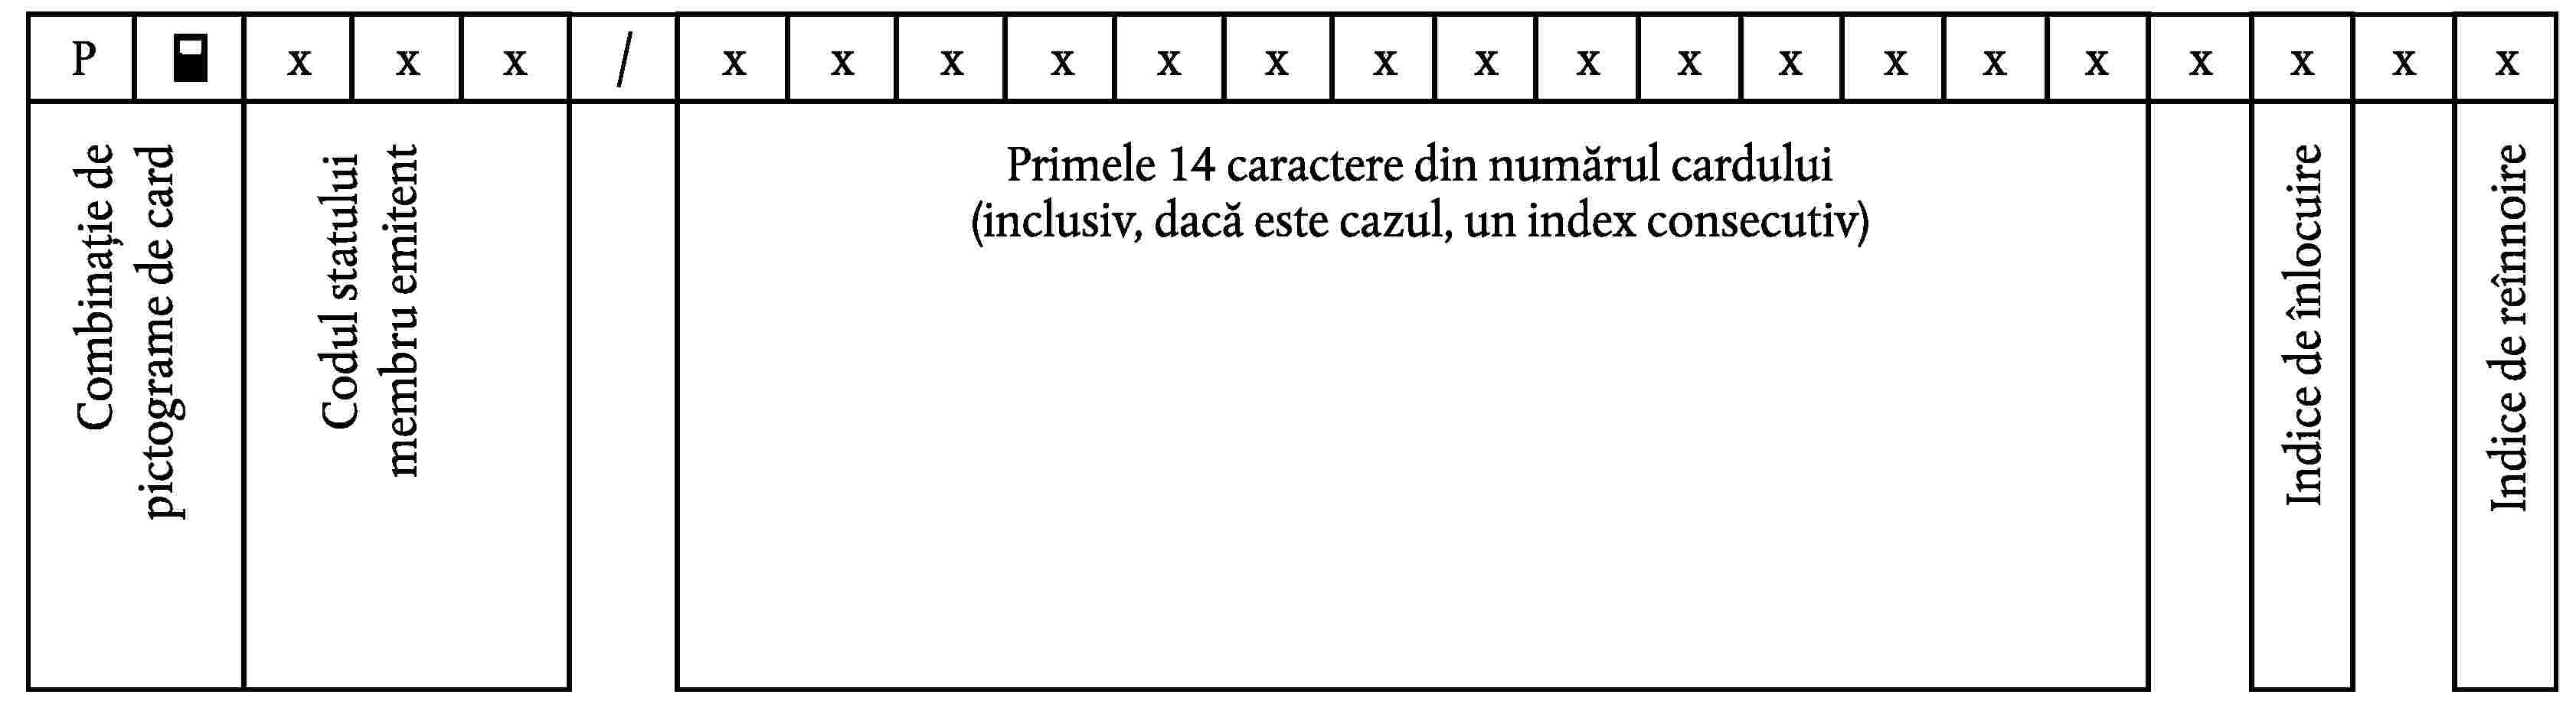 PxxxxxxxxxxxxxxxxxxxxxCombinație de pictograme de cardCodul statuluimembru emitentPrimele 14 caractere din numărul carduluiIndice de înlocuireIndice de reînnoire(inclusiv, dacă este cazul, un index consecutiv)